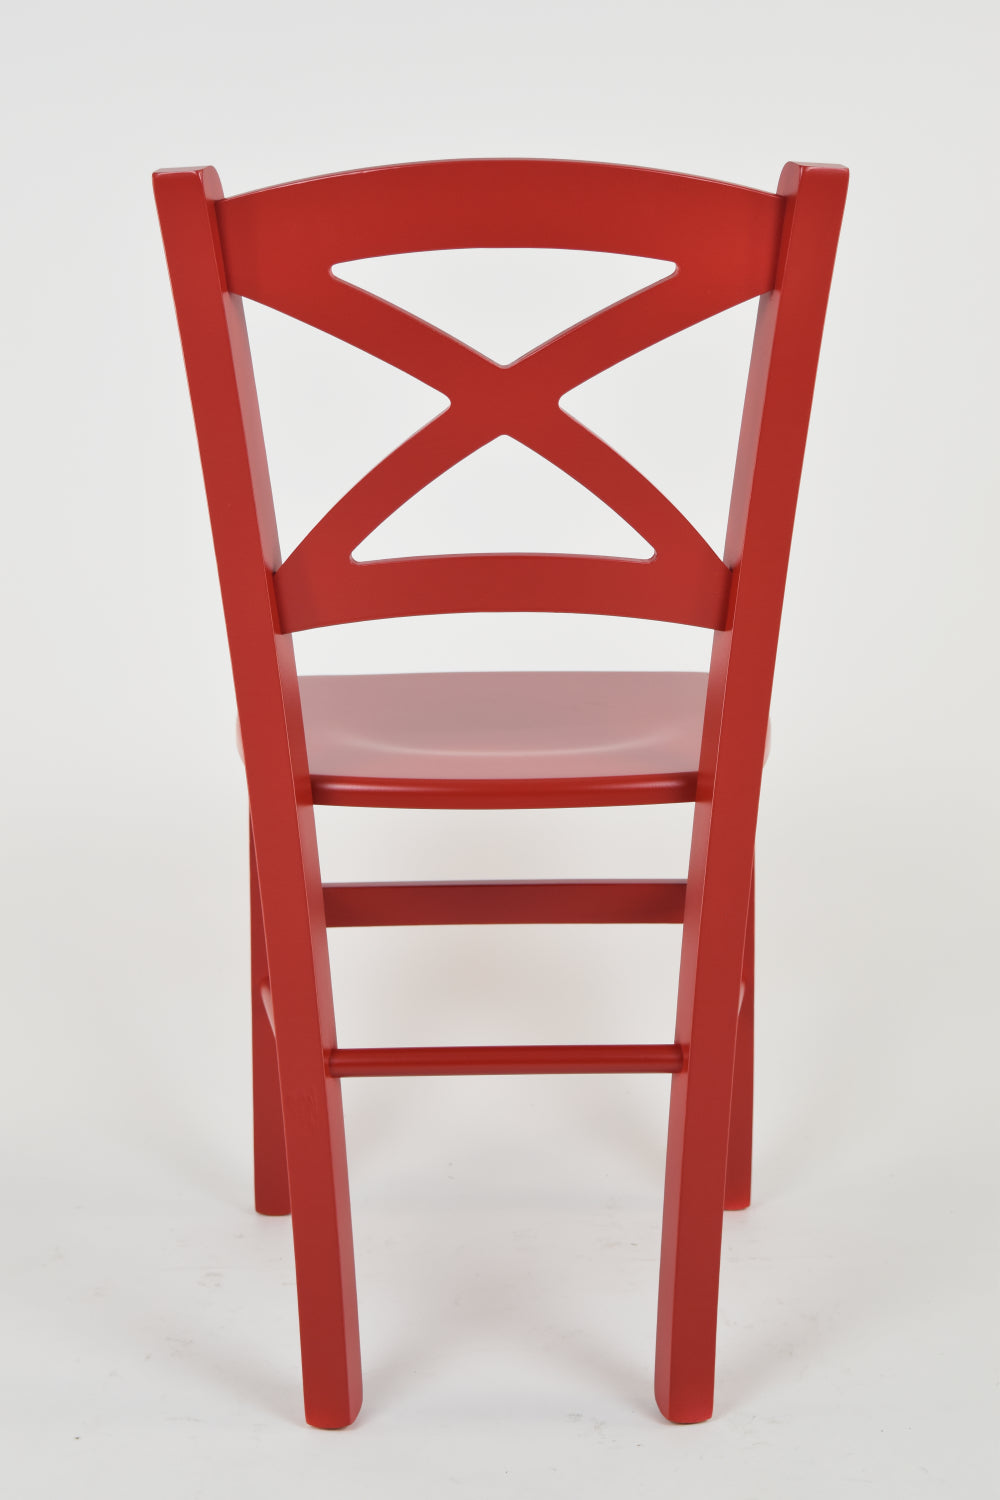 Tommychairs - Set 2 sillas de Cocina y Comedor Cross, Estructura en Madera de Haya lacada Color Rojo y Asiento en Madera